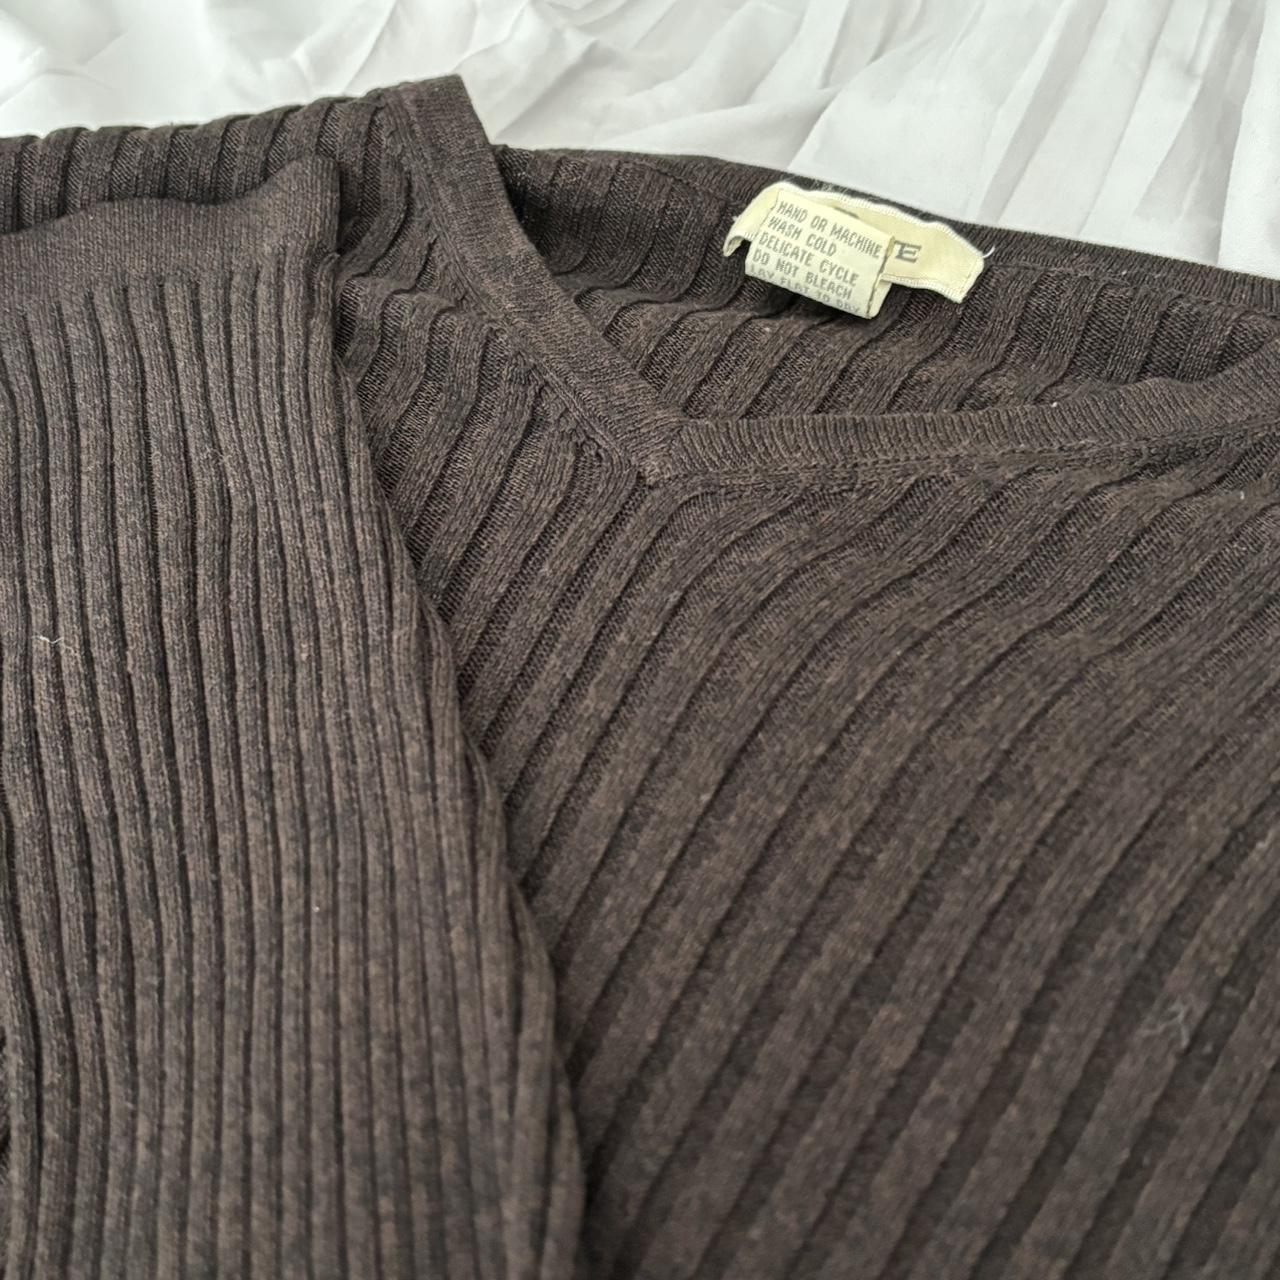 VaBene dark brown preppy sweater -size XL msg... - Depop